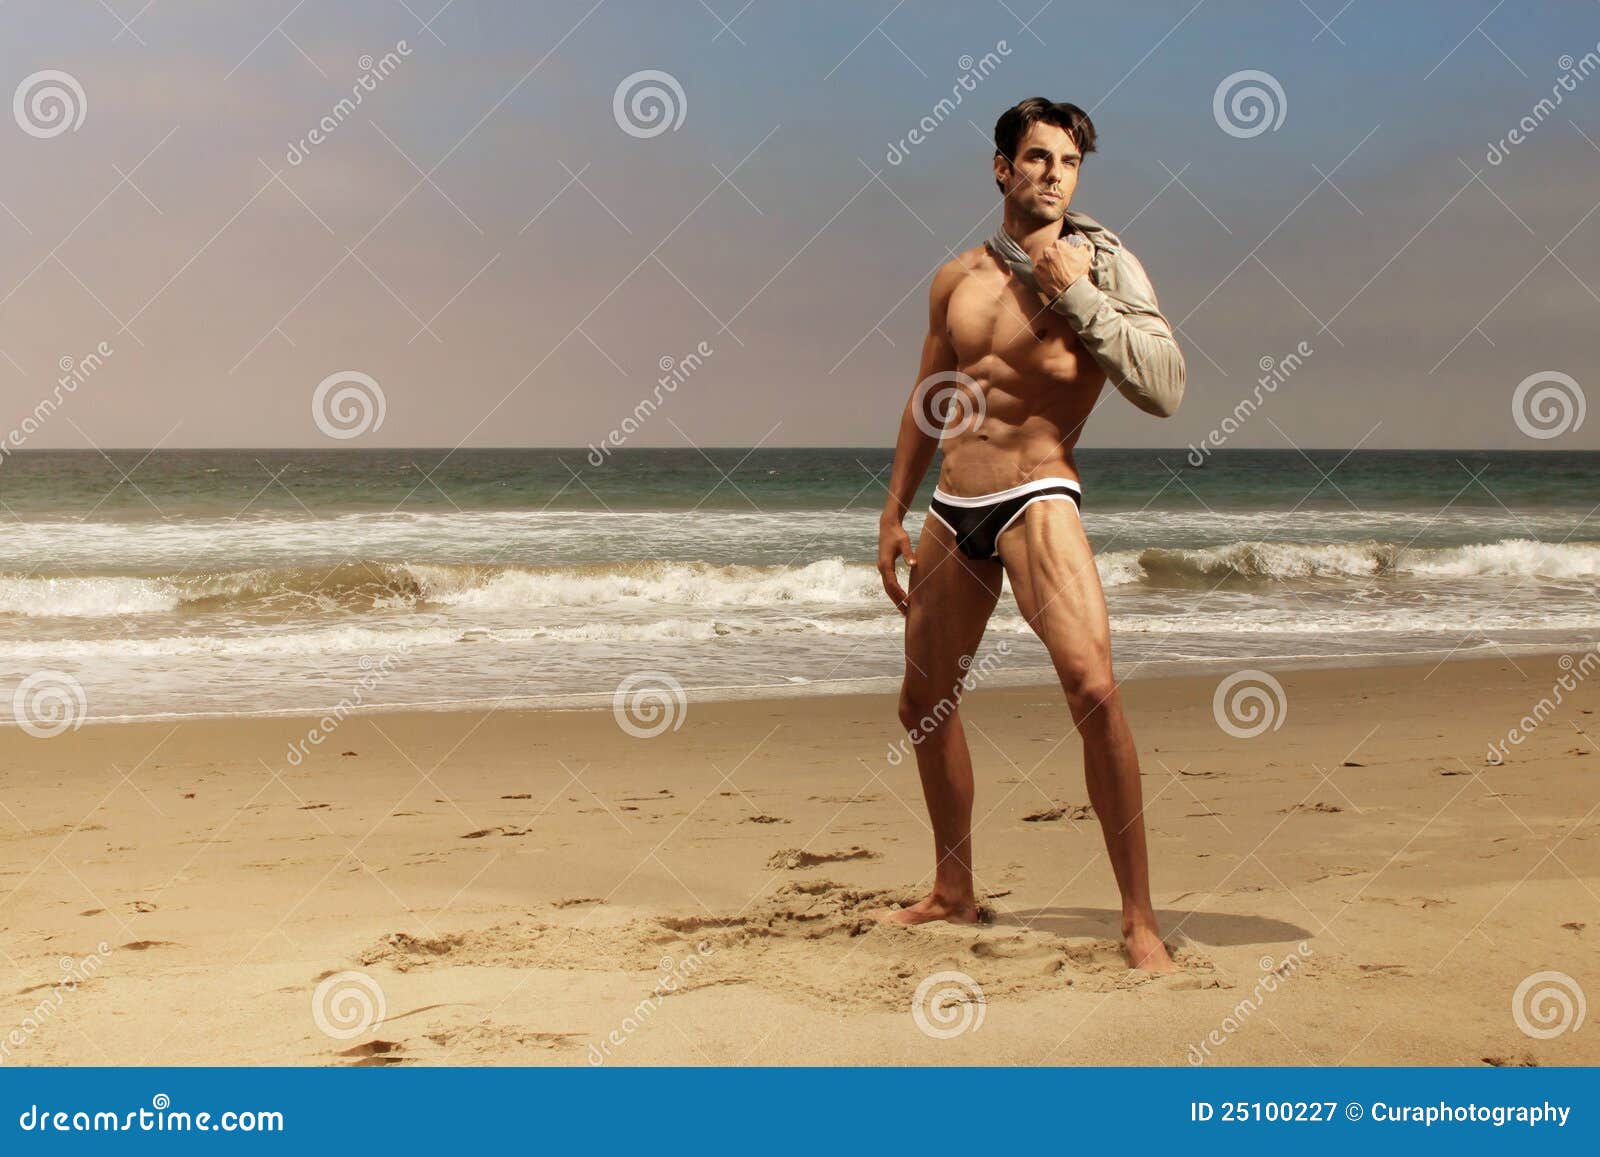 Гол пляж муж. Кубинцы парни на пляжах. Фотосъемка мужчин моделей на пляже. Красивые кубинские мужчины.